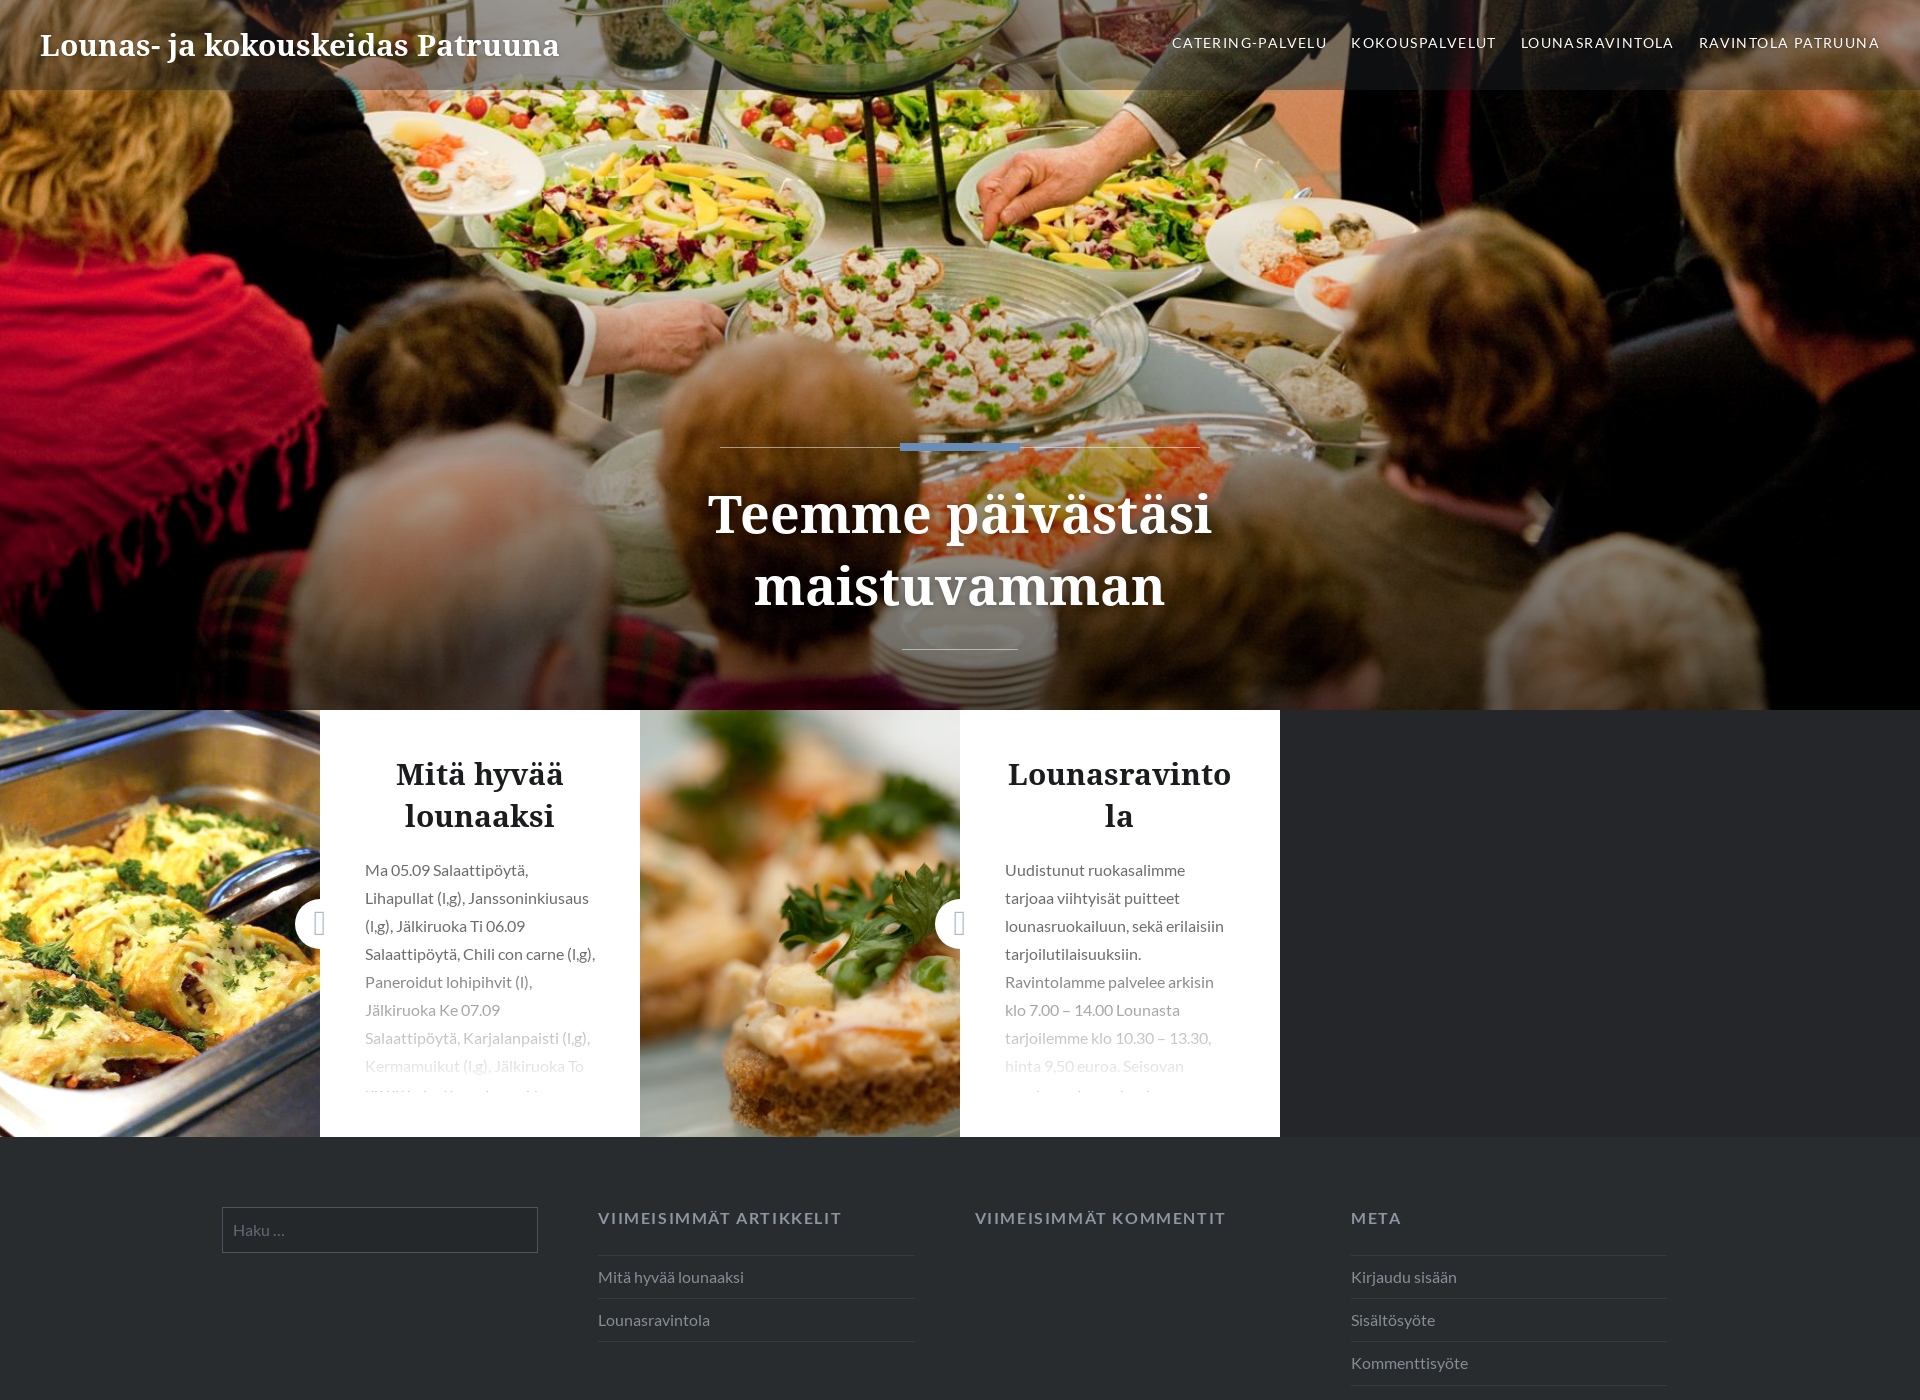 Näyttökuva ravintolapatruuna.fi